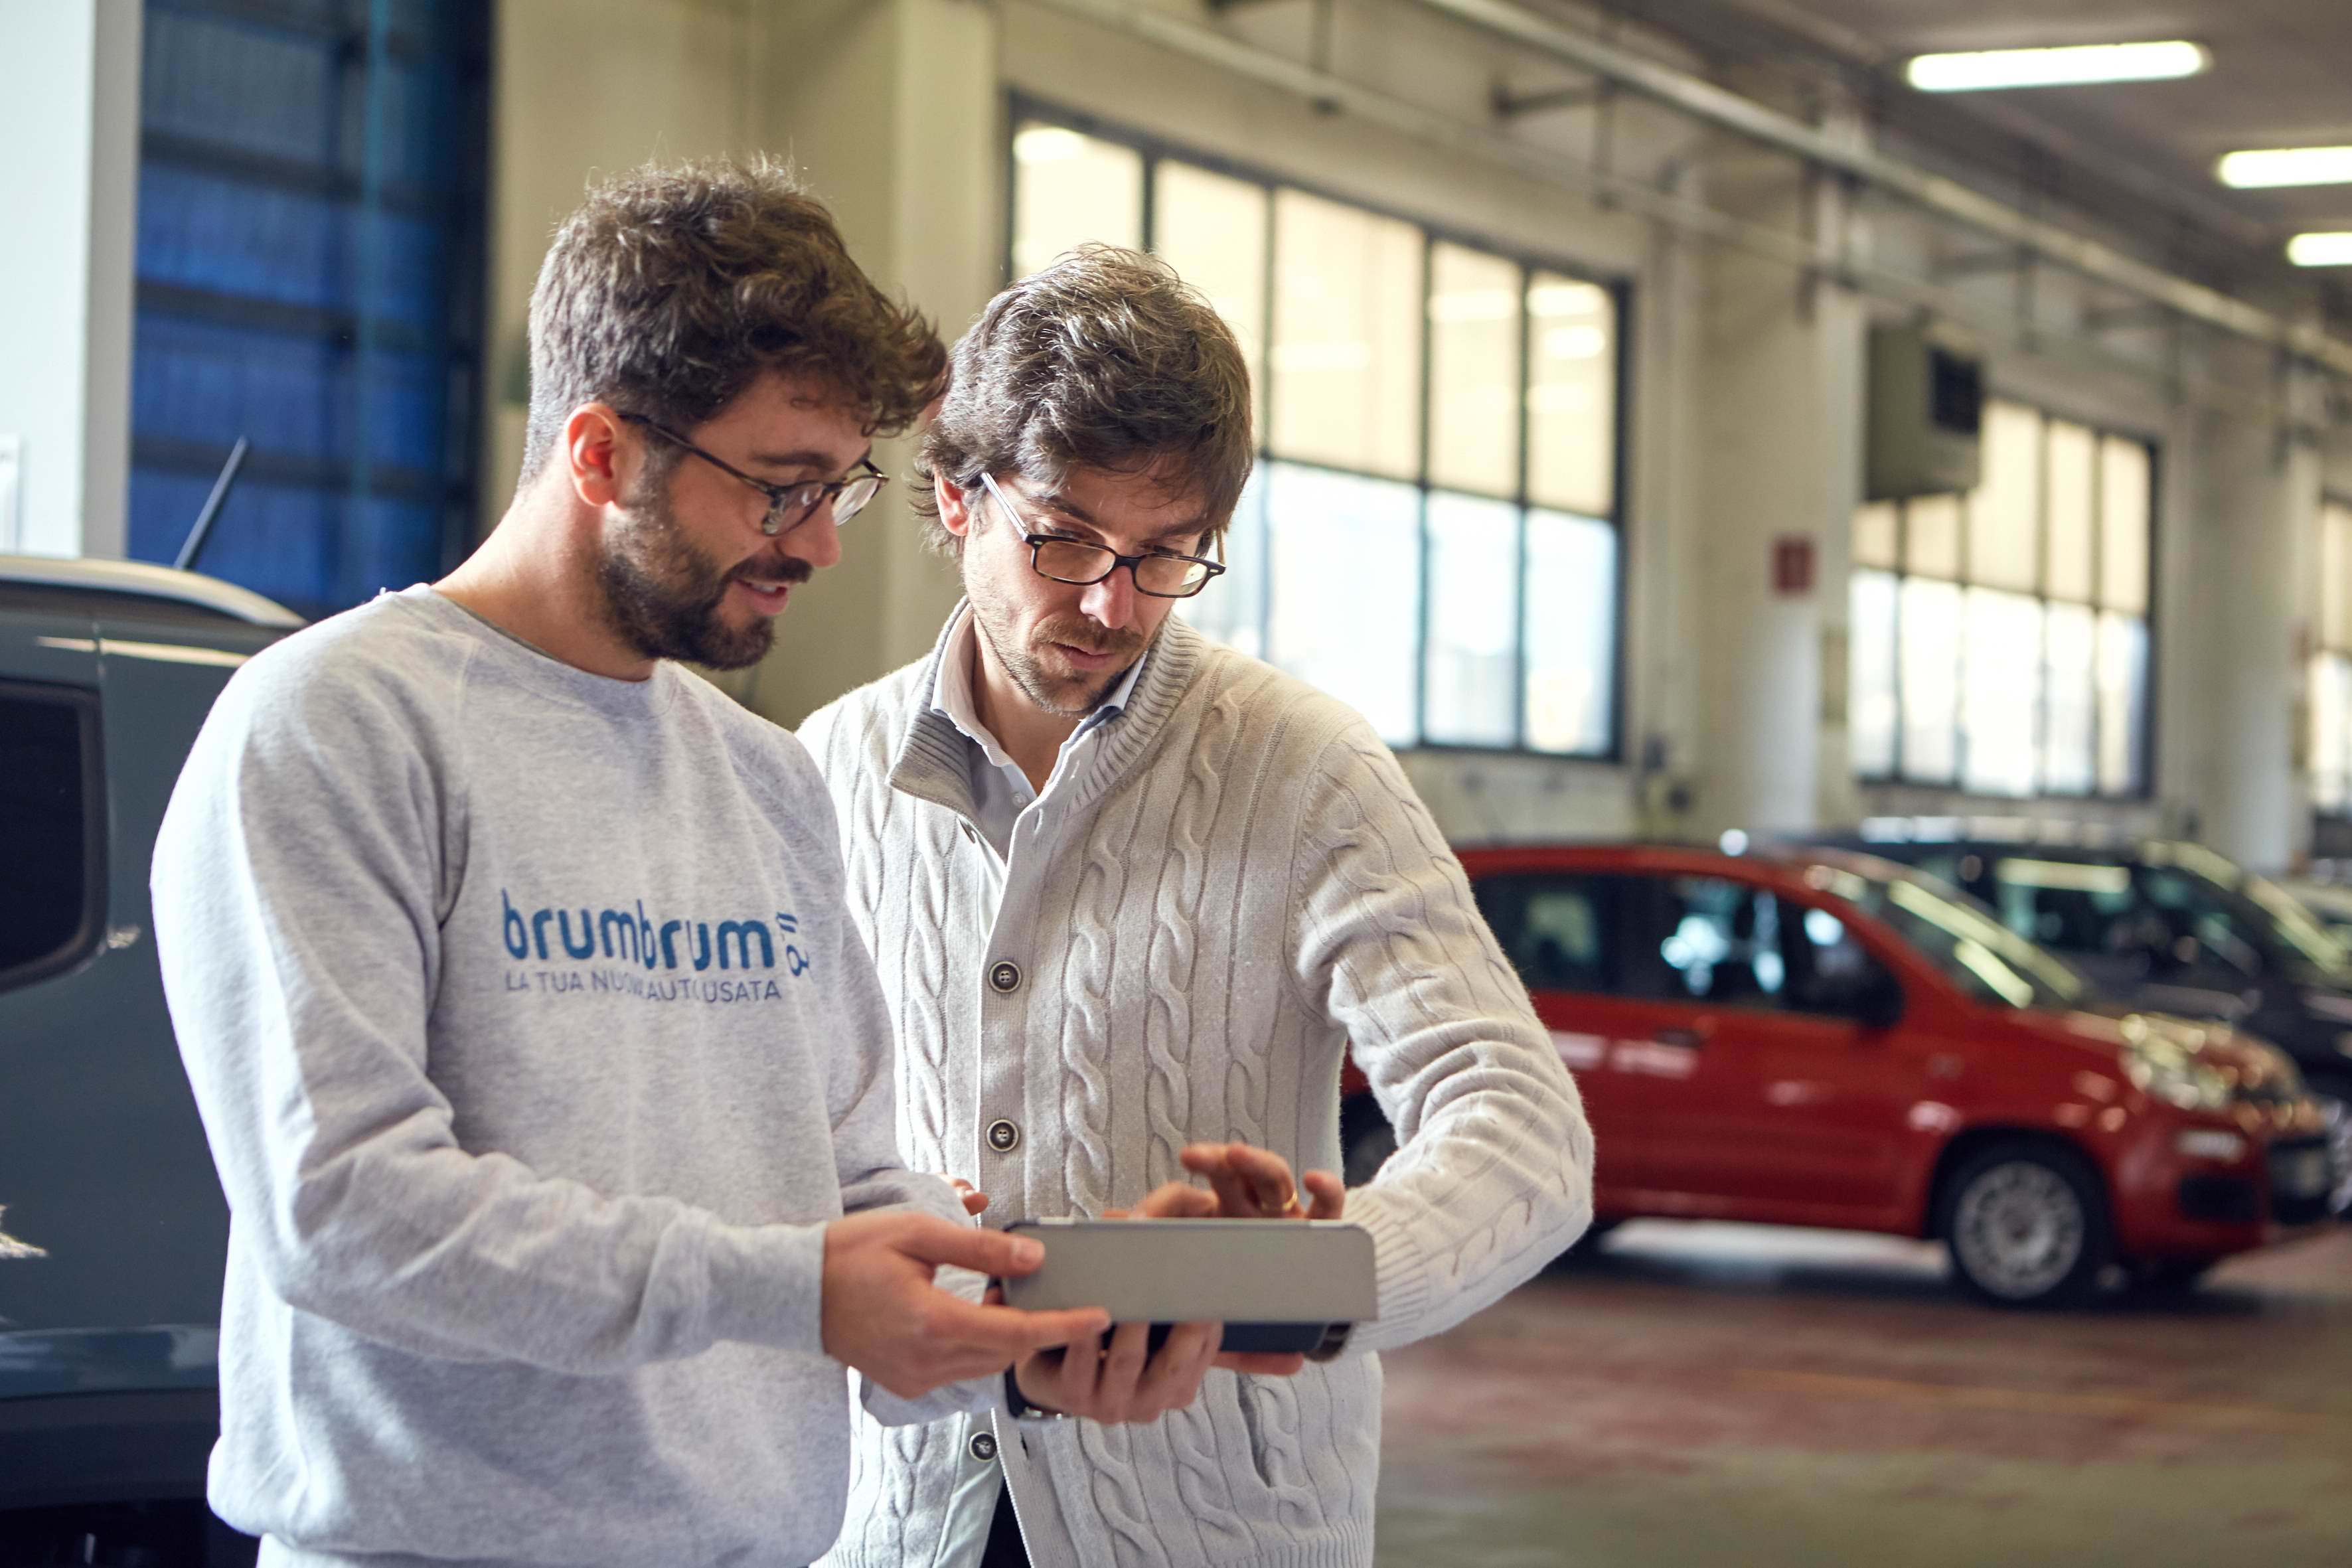  Nasce BrumBrum: l’e-commerce che rivoluziona l’esperienza d’acquisto di una “nuova auto usata”